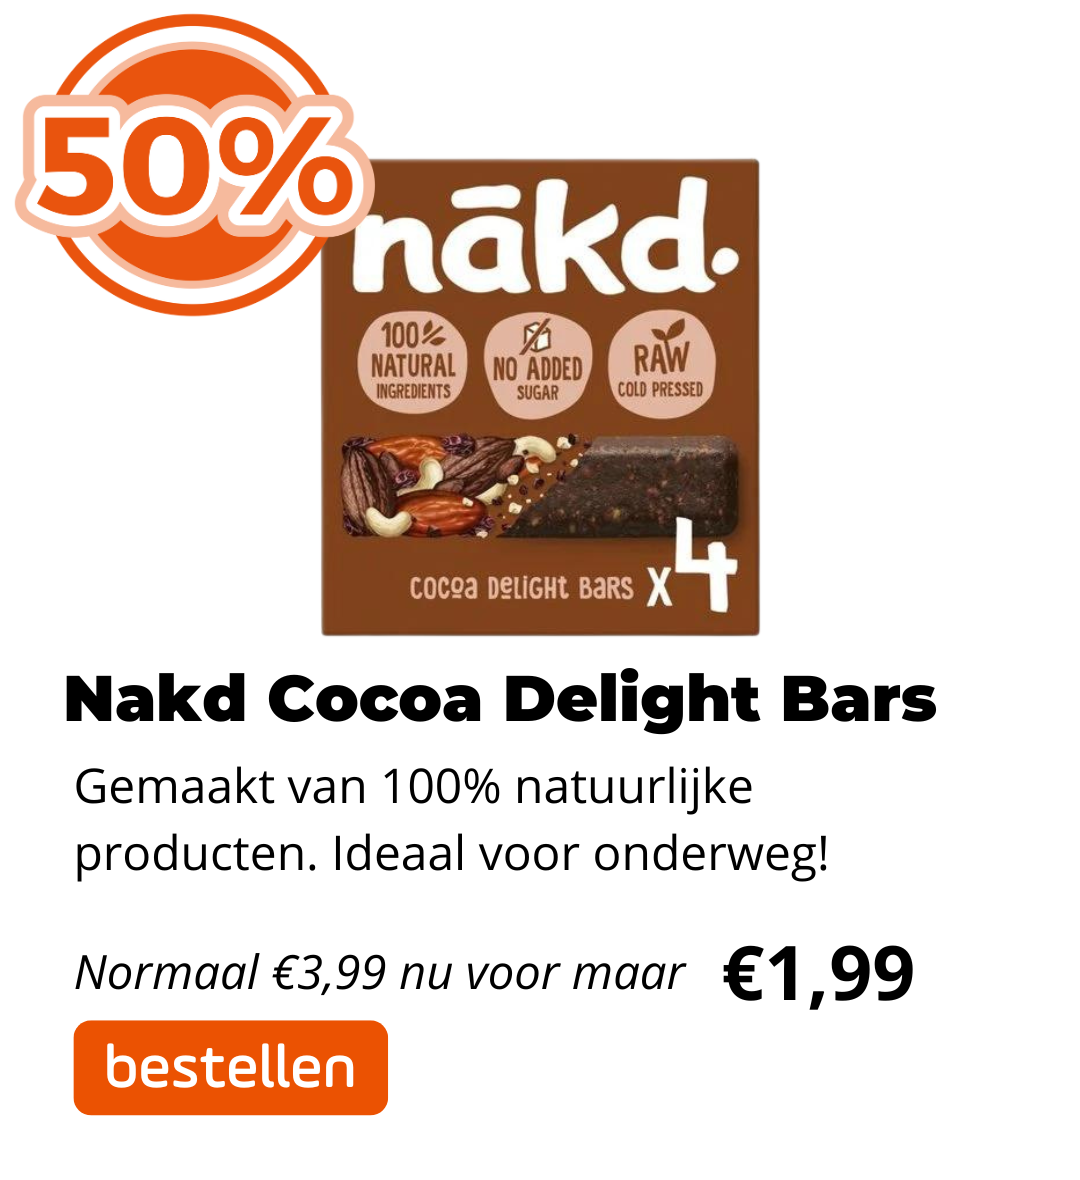 Nakd Cocoa Delight Bars 50% korting